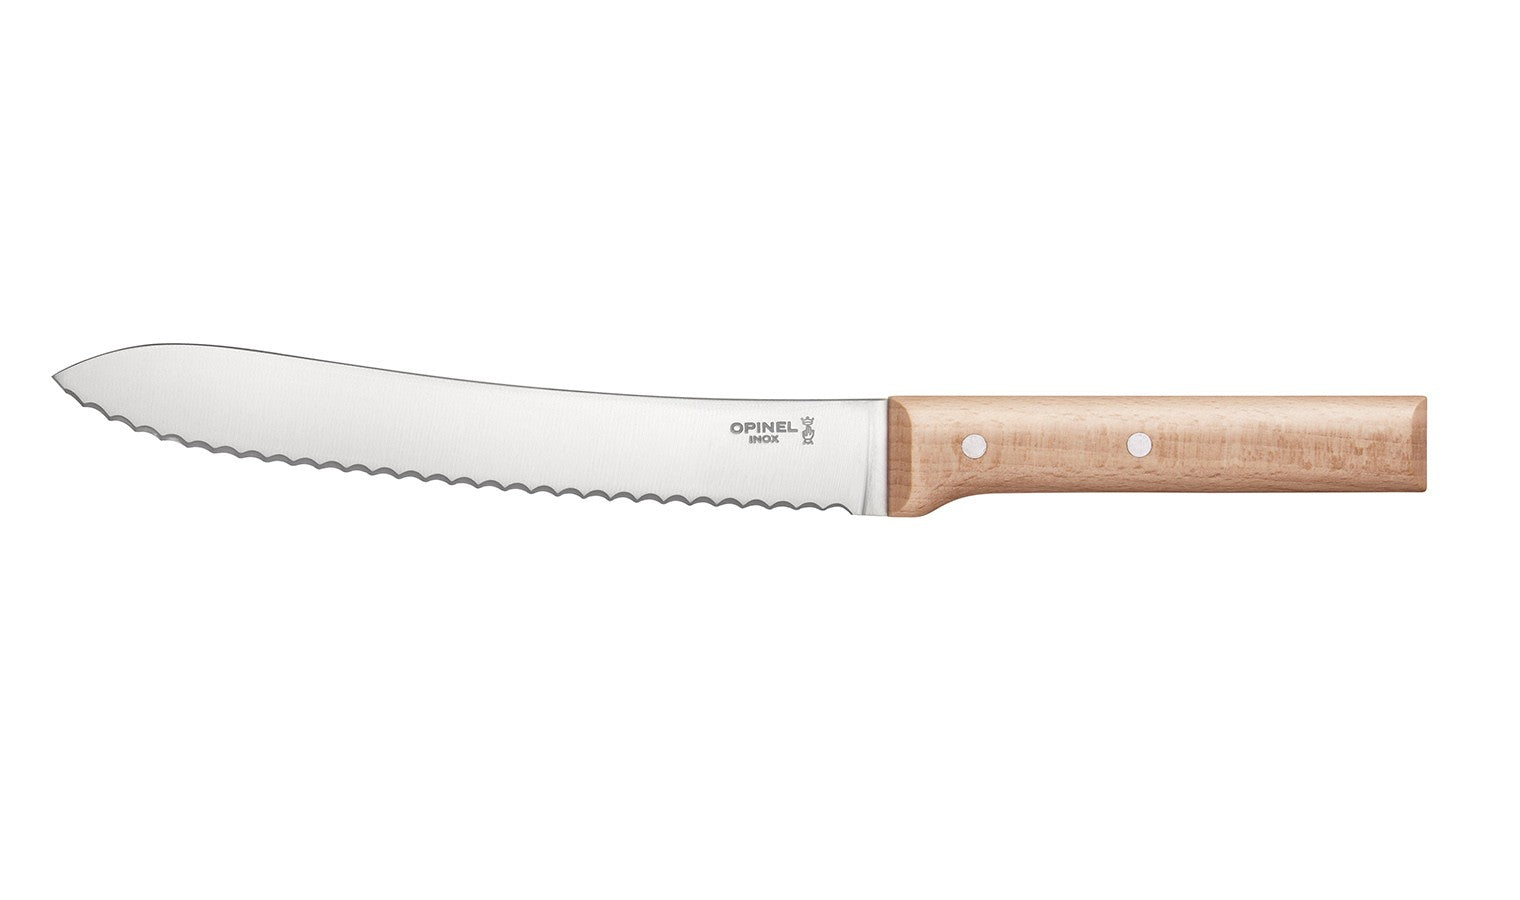 Opinel Bread Knife Canada